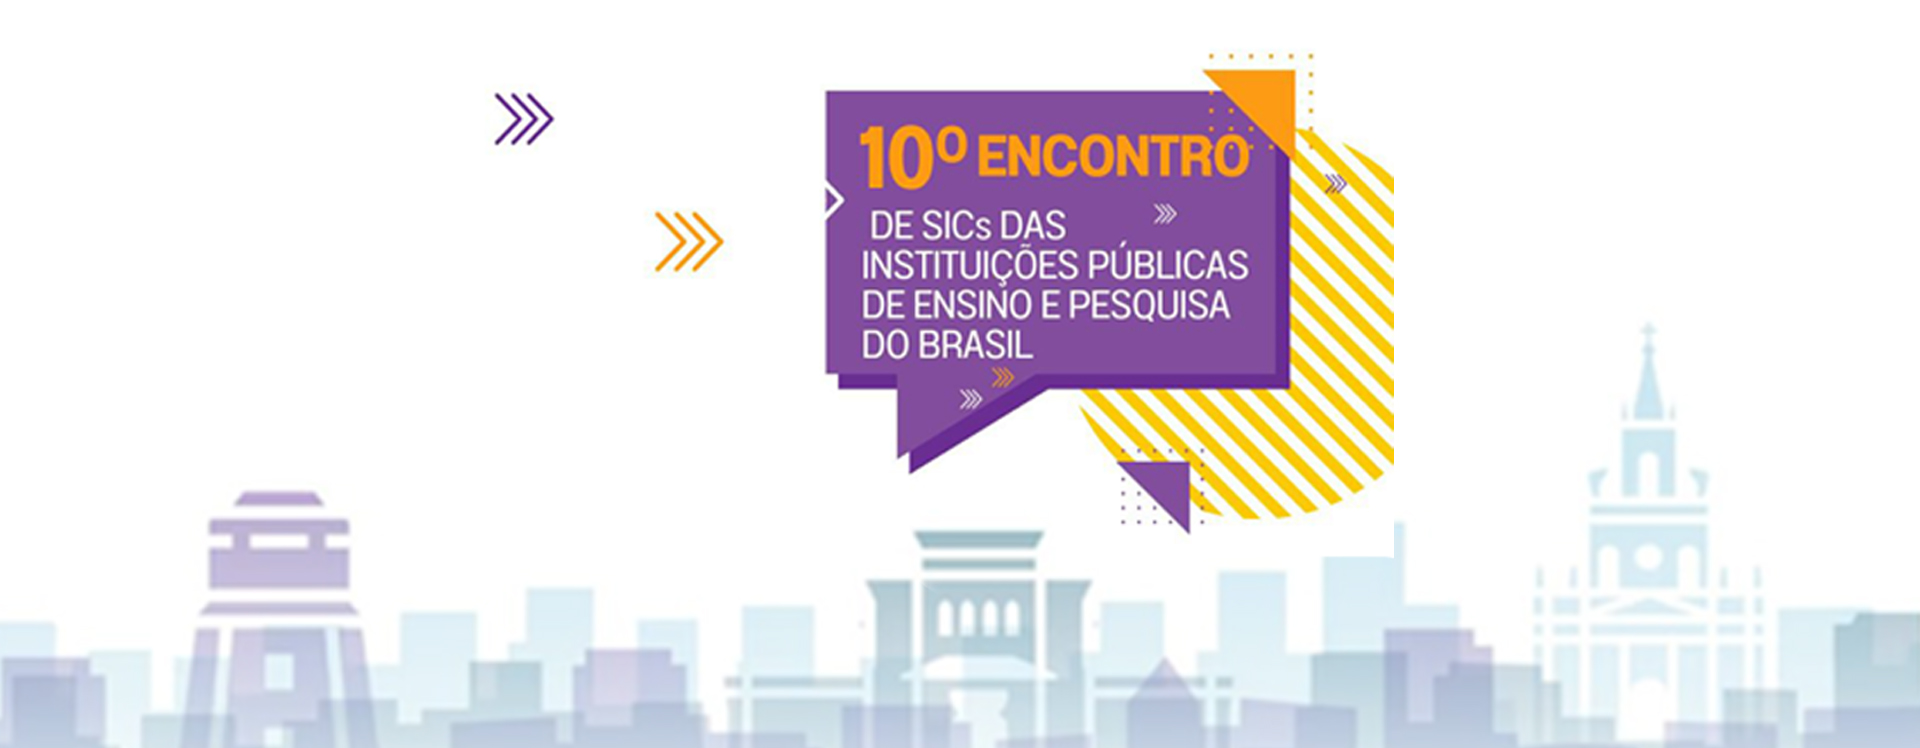 10º Encontro de SICs das Instituições Públicas de Ensino e Pesquisa do Brasil